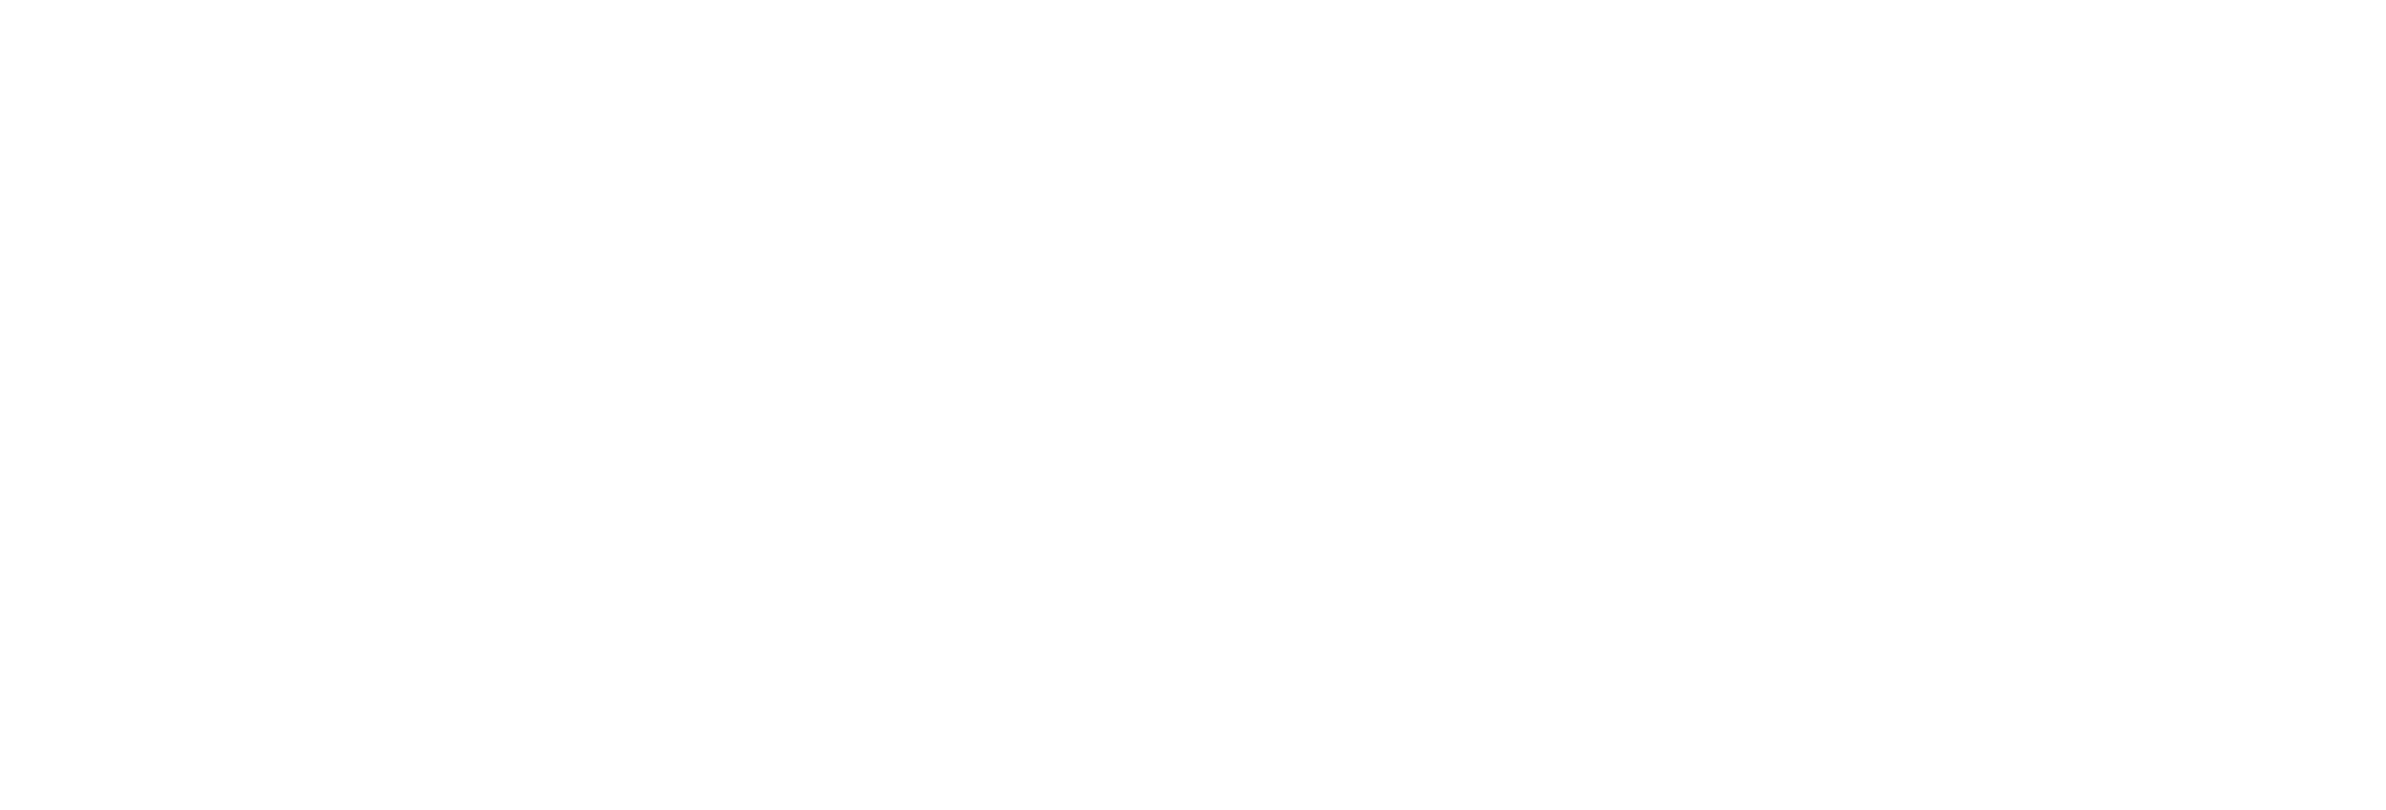 Escuela Internacional de Medicina y Cultura Oriental